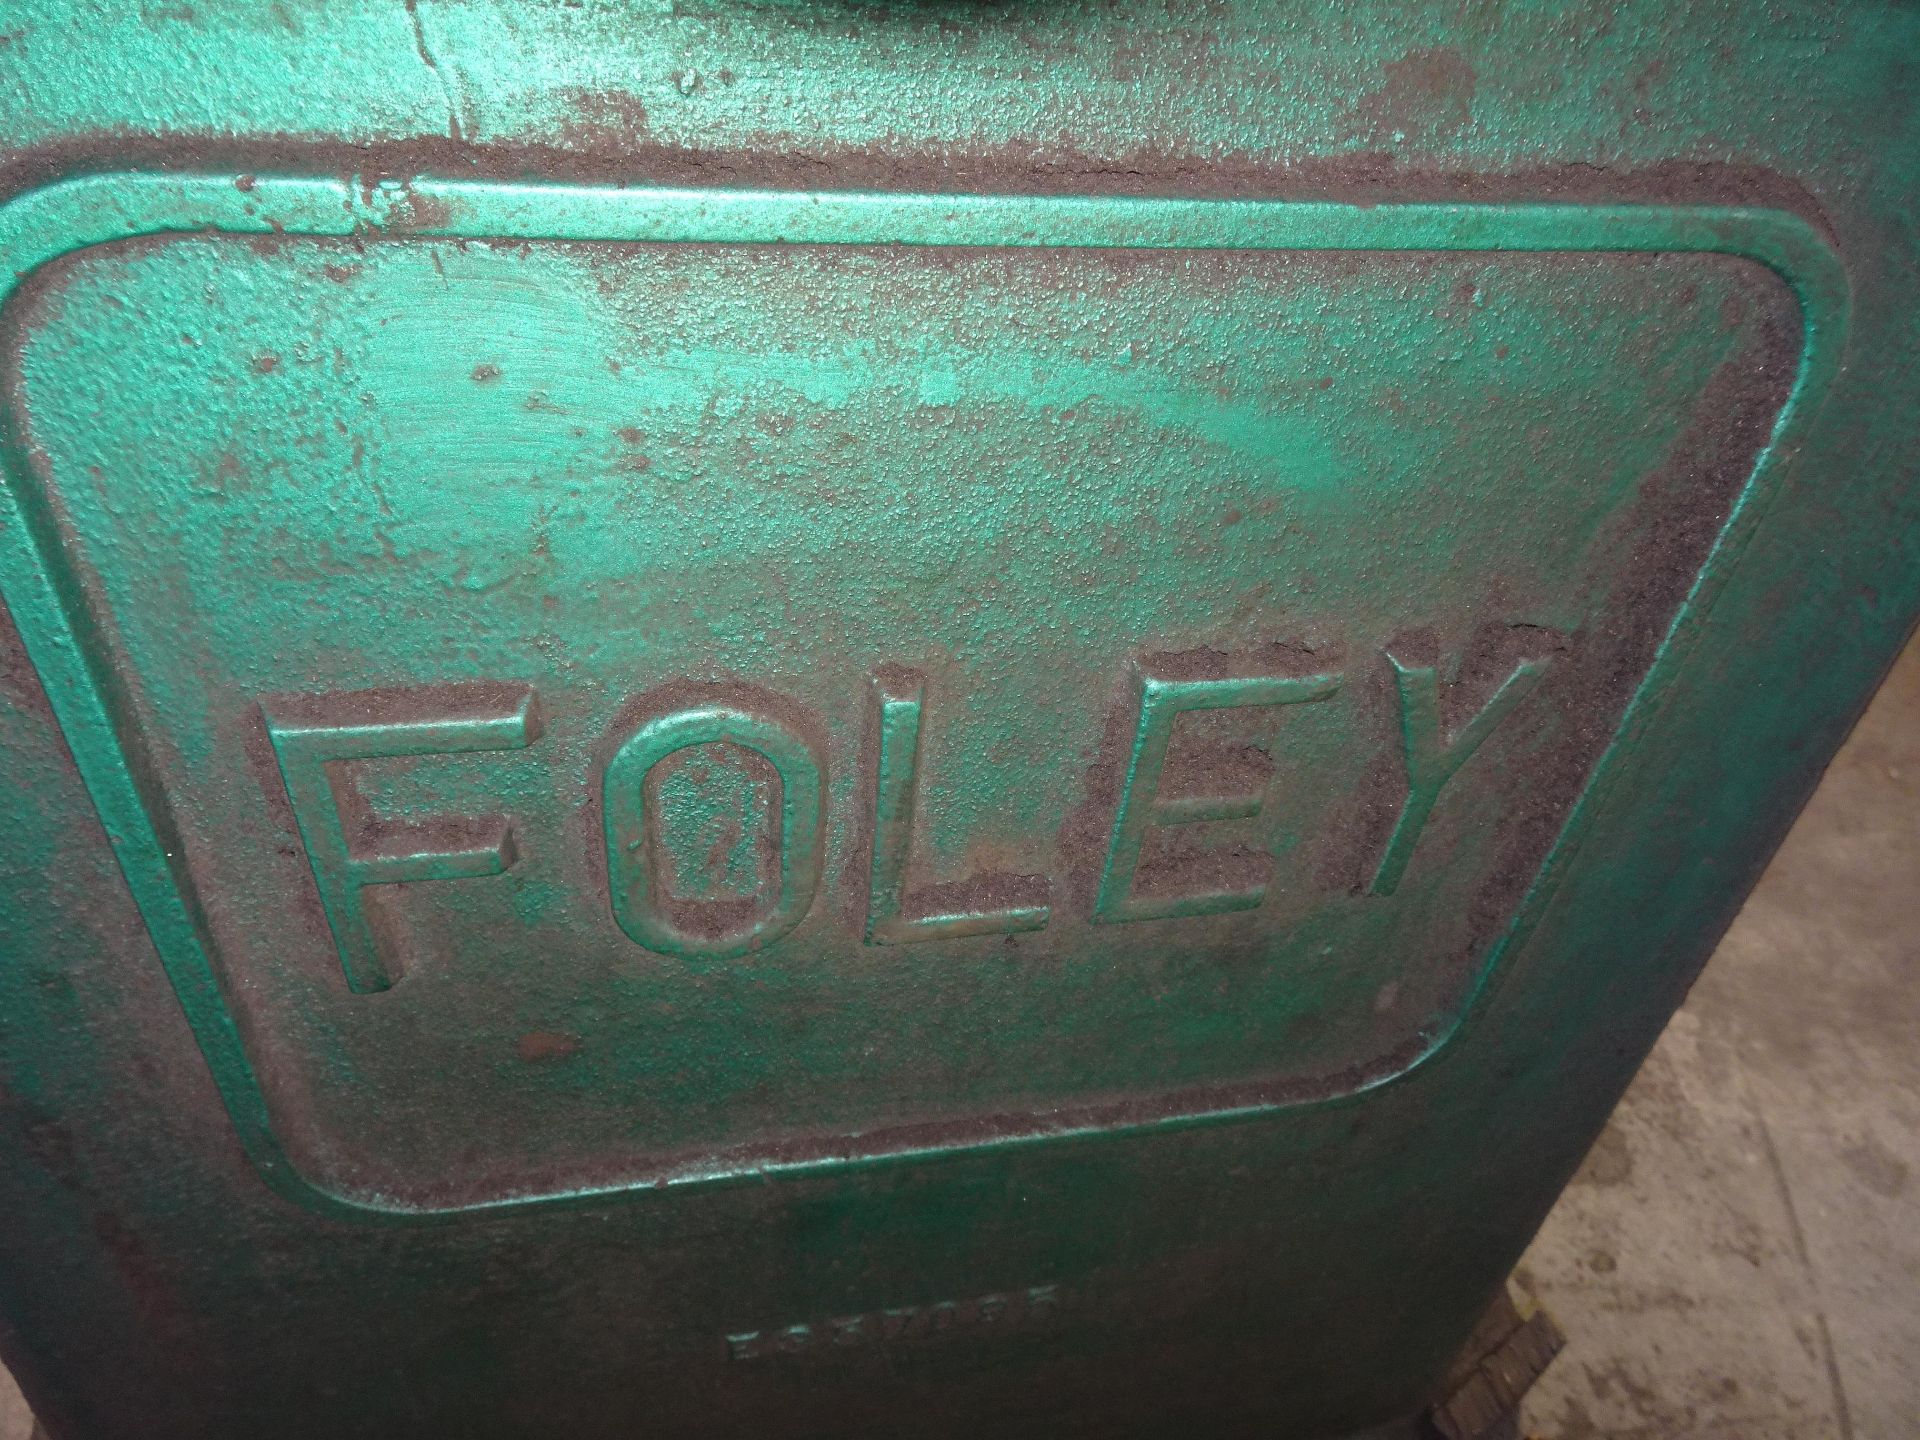 Foley Carbide Saw Grinder - Image 2 of 3